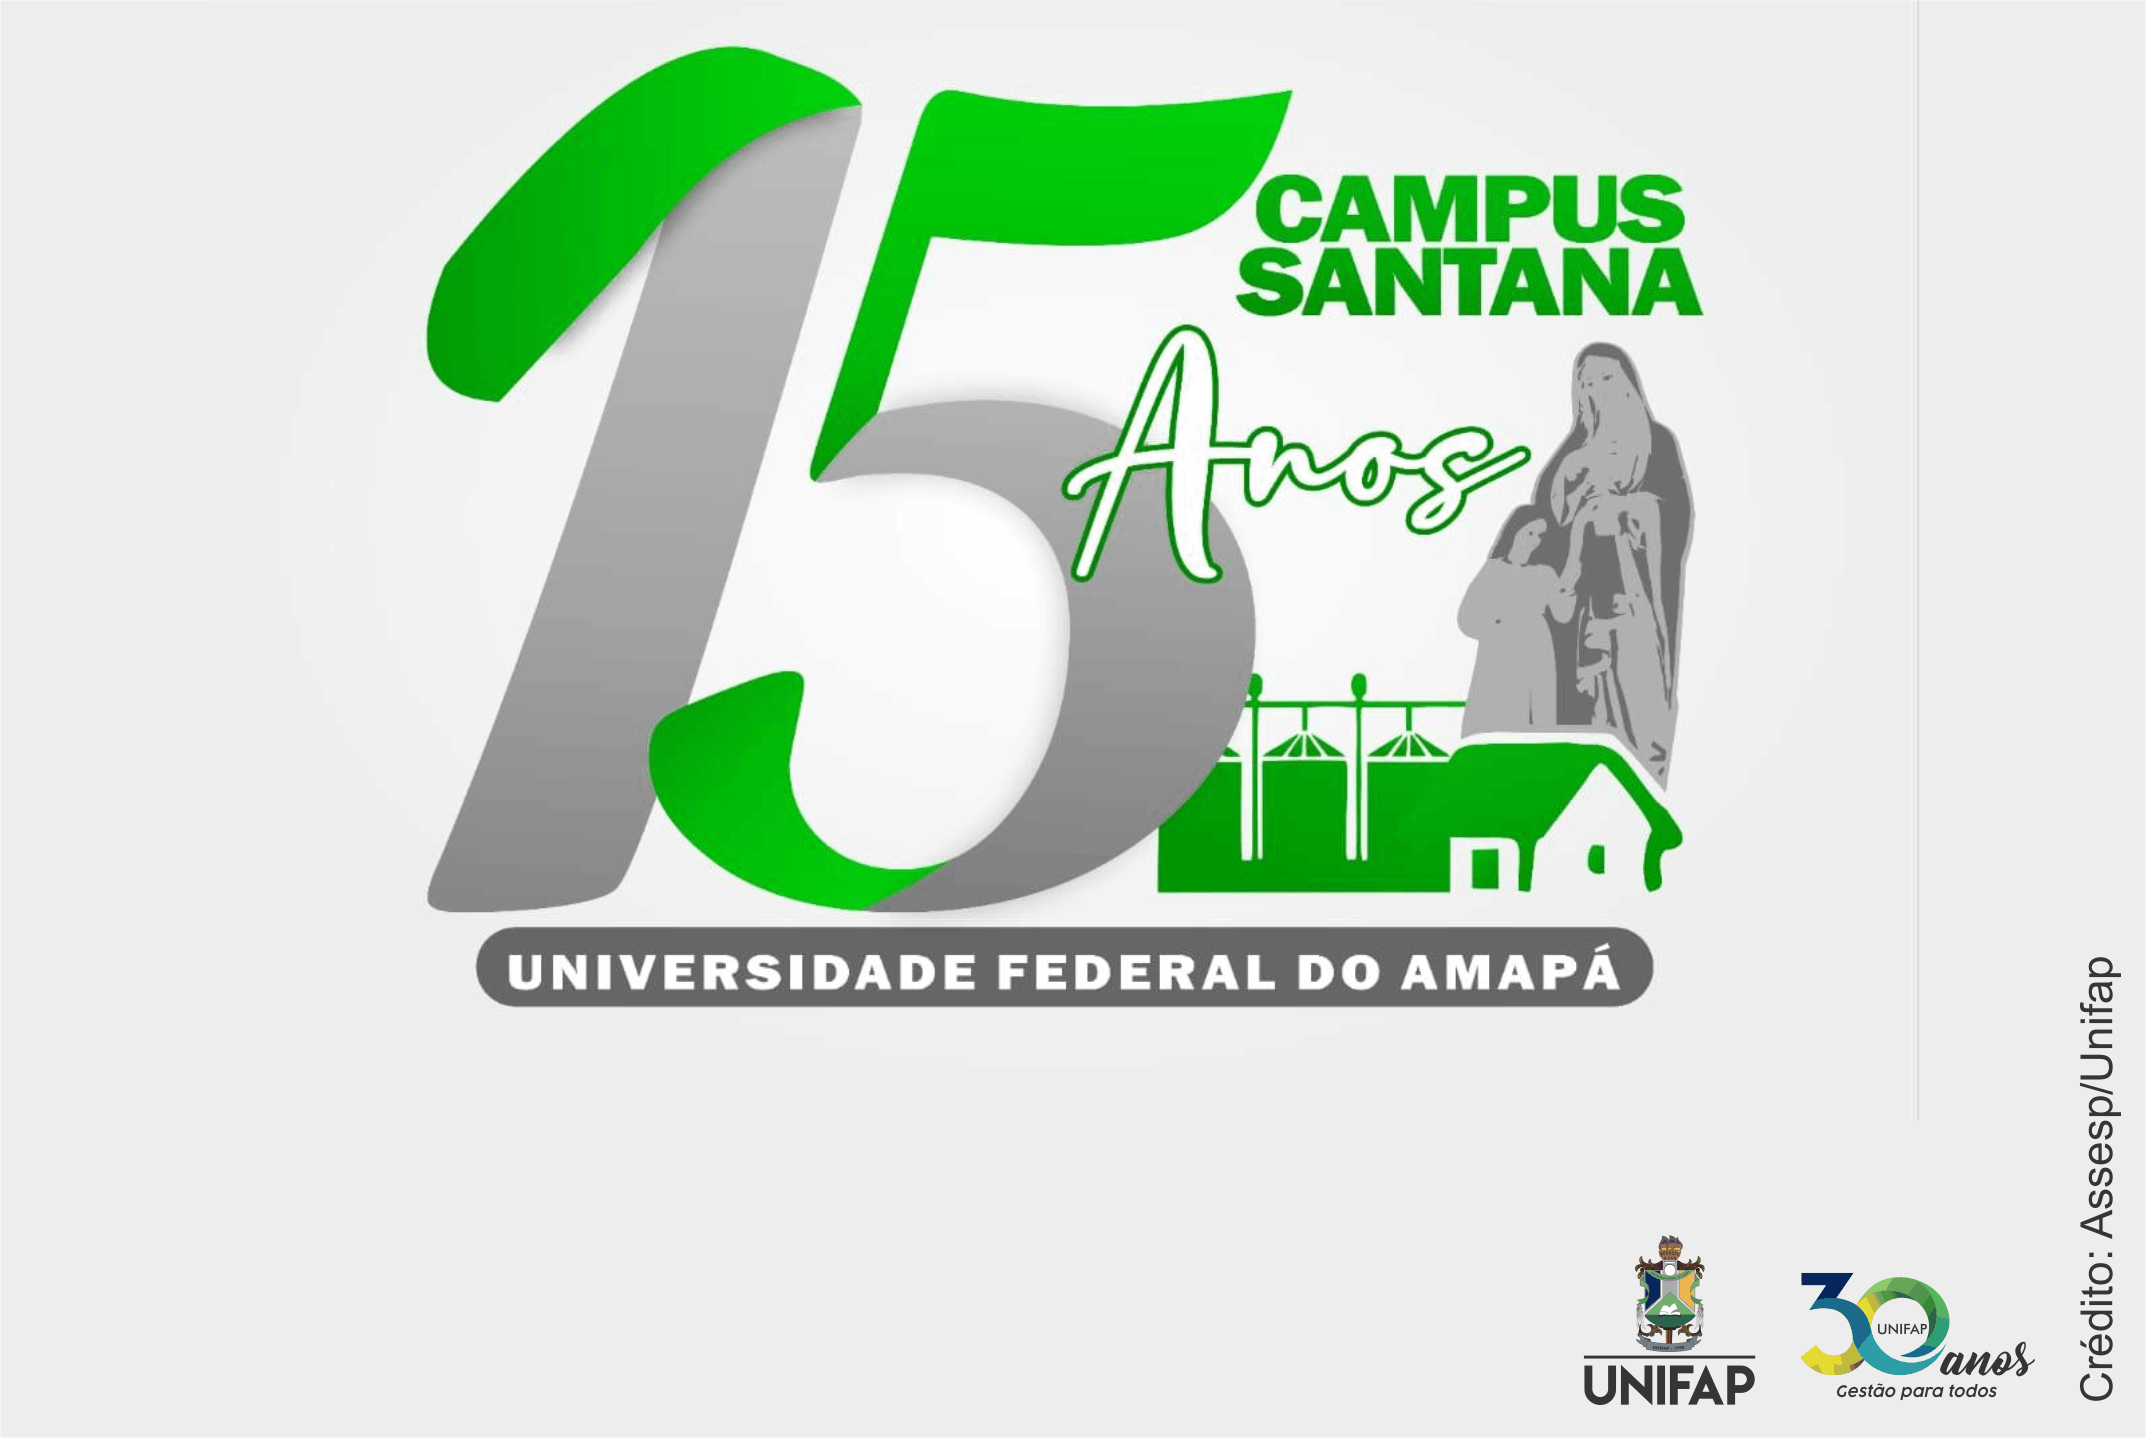 Campus Santana da UNIFAP inicia campanha comemorativa dos 15 anos